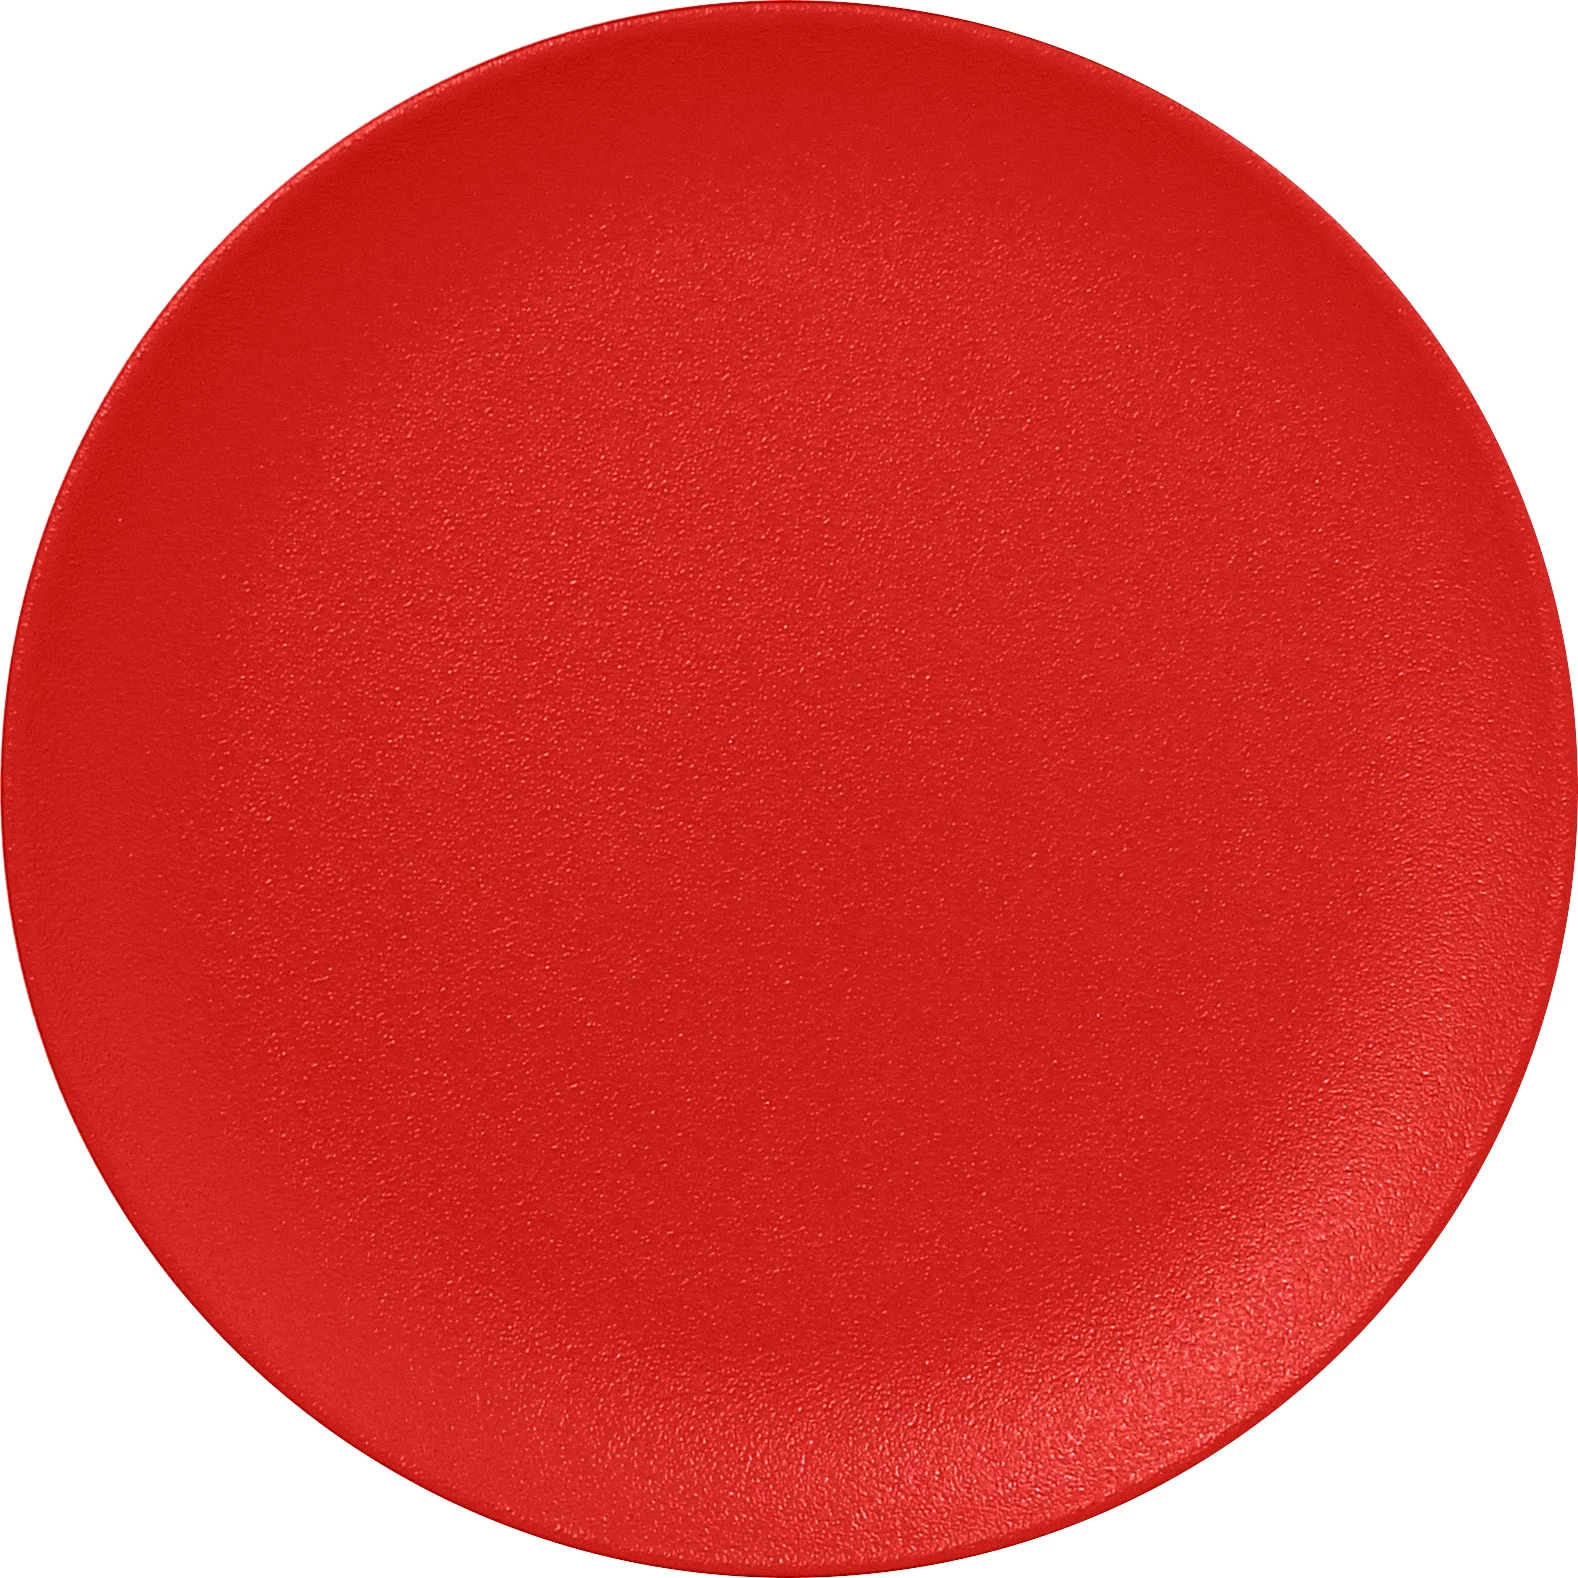 RAK Neofusion flad tallerken uden fane, rød, ø24 cm